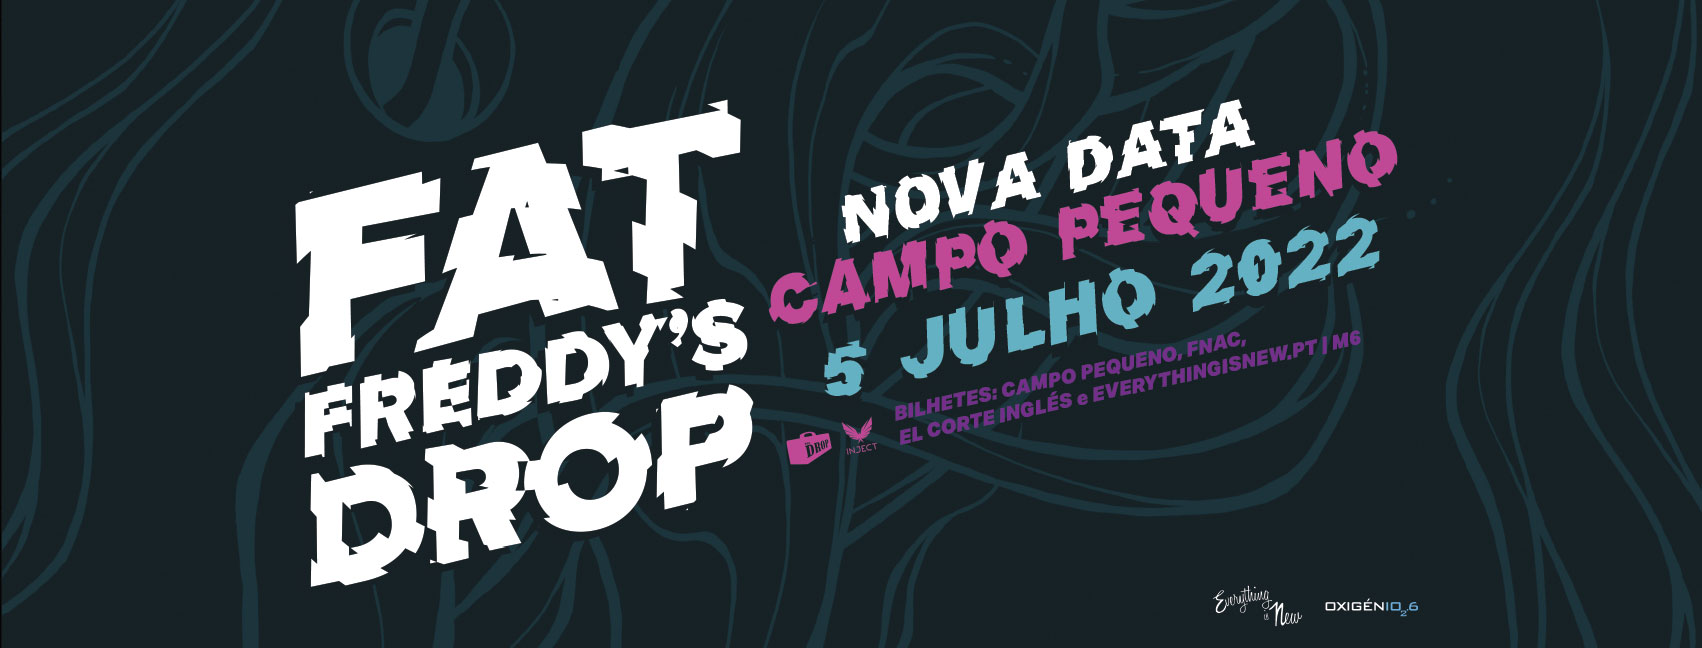 Nova Data: Fat Freddy's Drop // Campo Pequeno